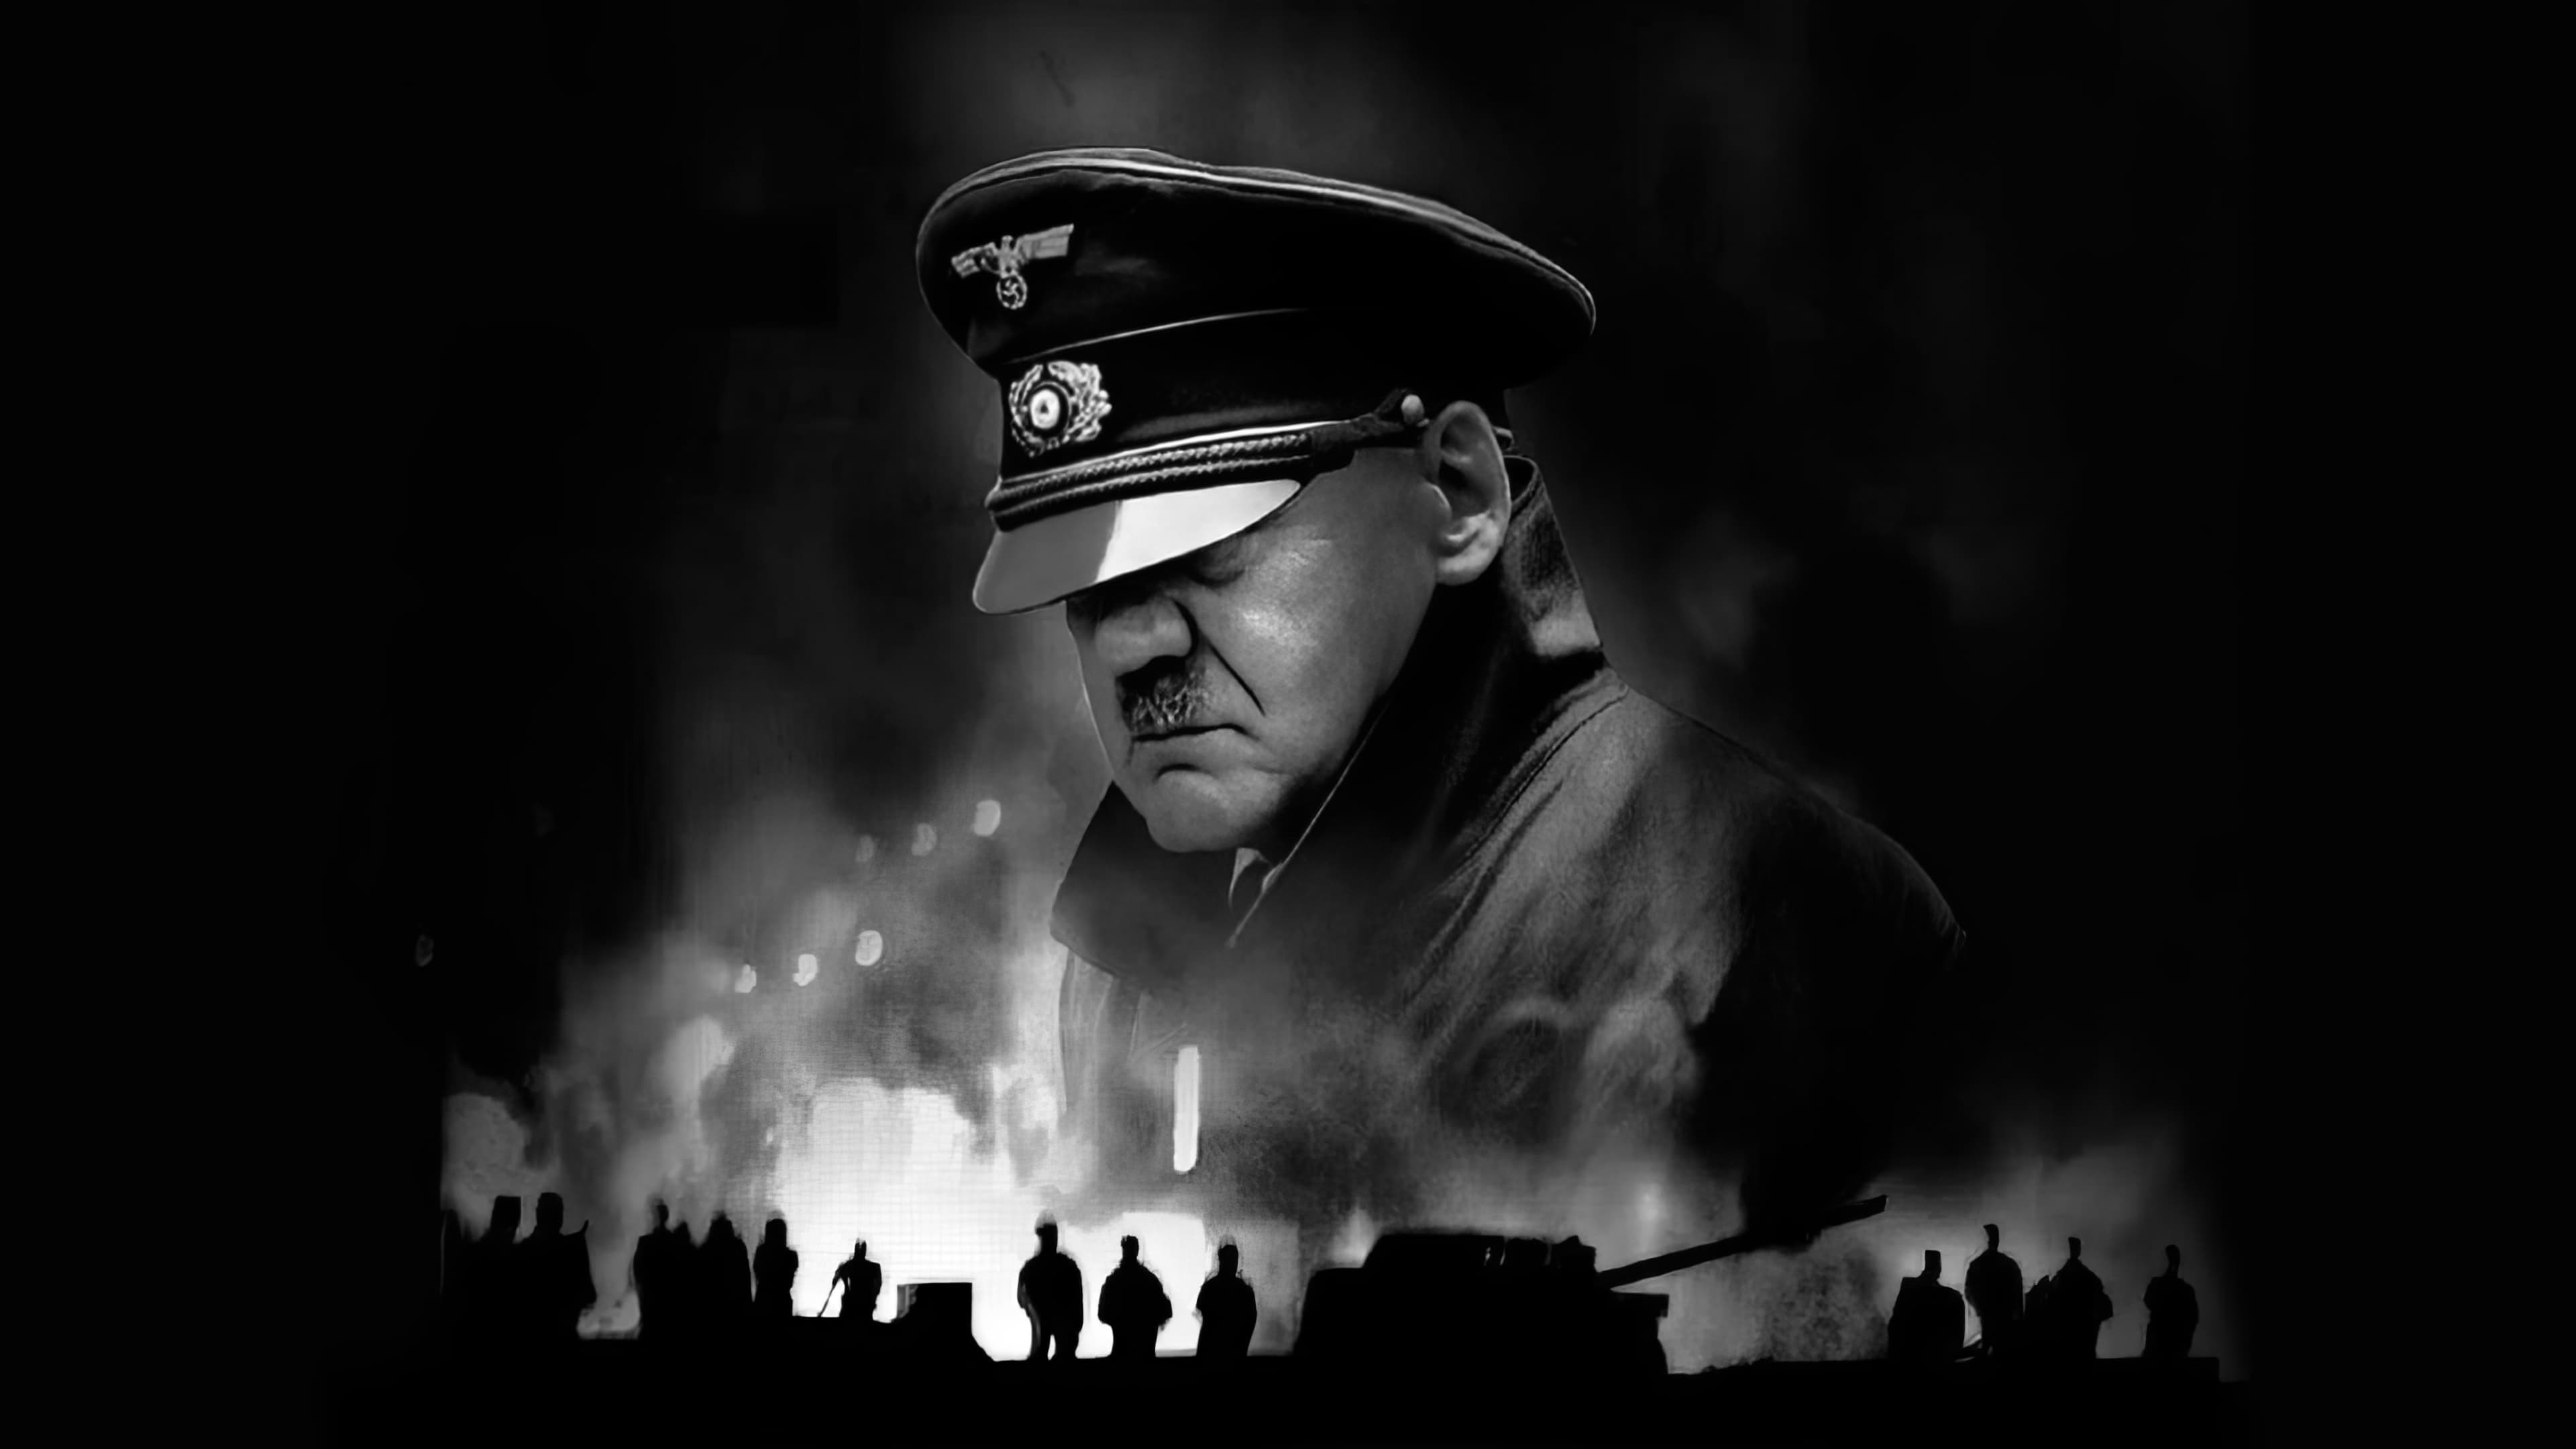 A bukás - Hitler utolsó napjai (2004)